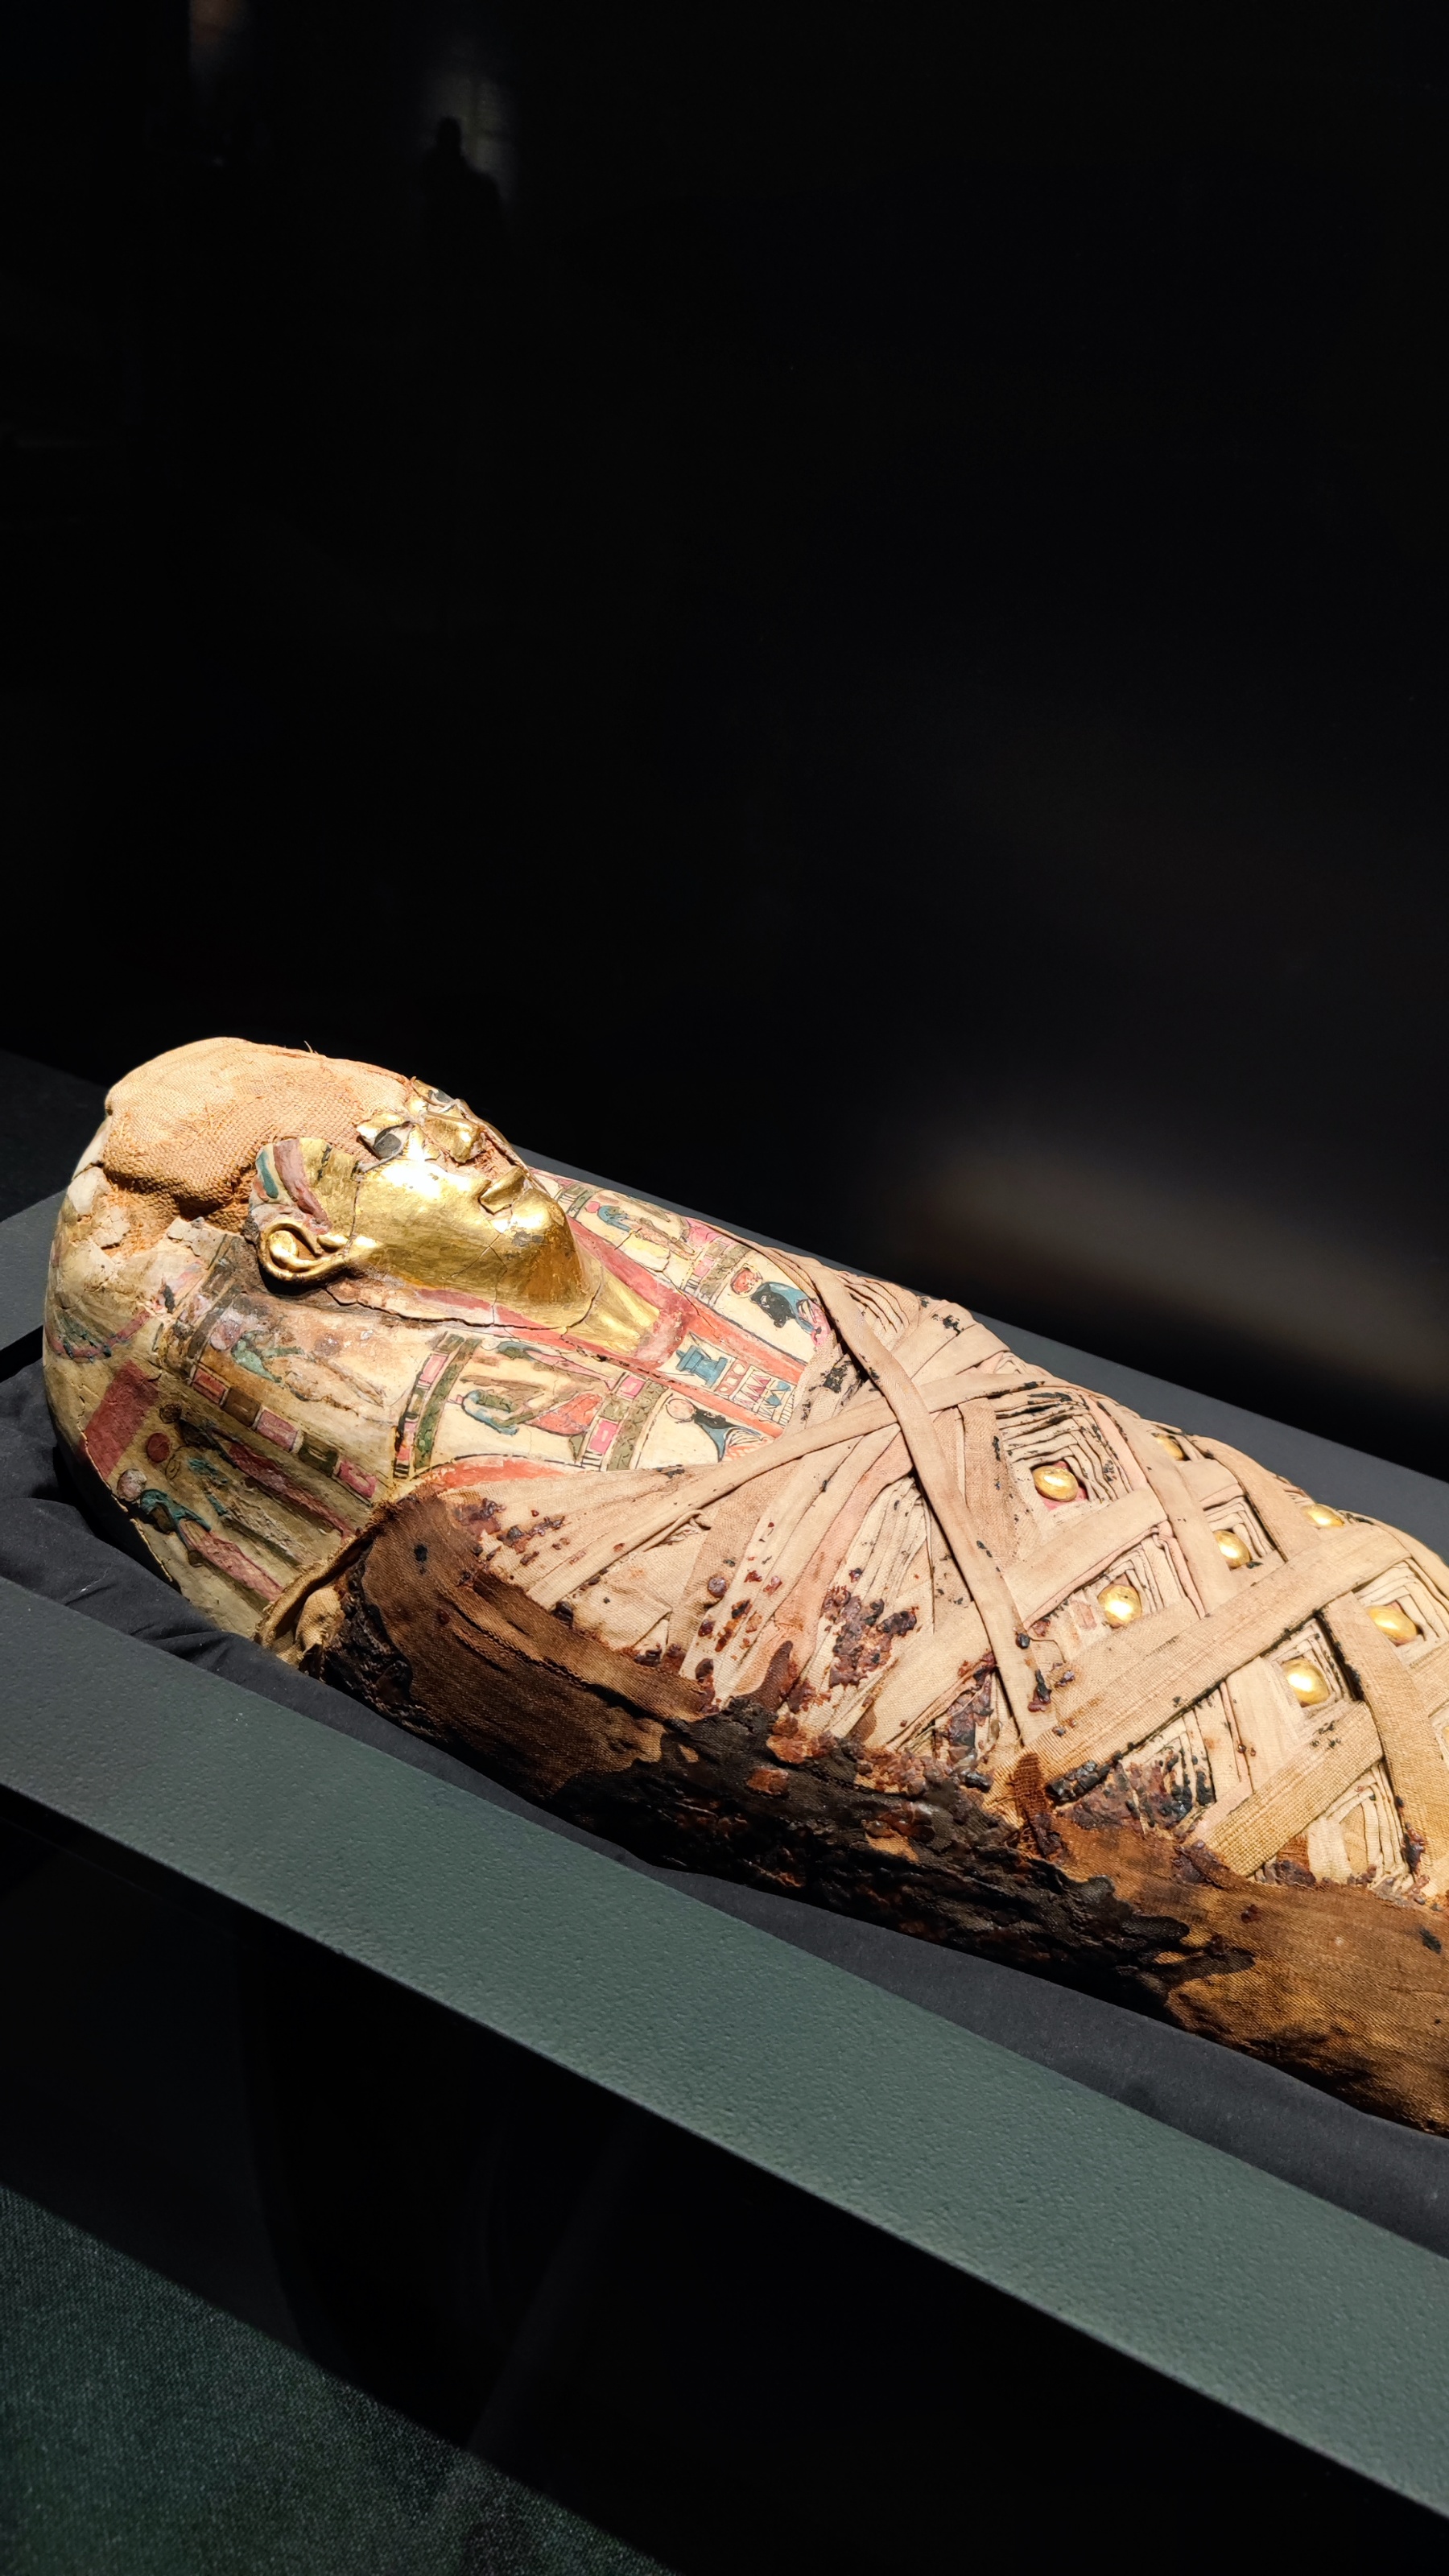 这个民族的木乃伊与活人住在一起，最初的工艺比埃及还早2000年